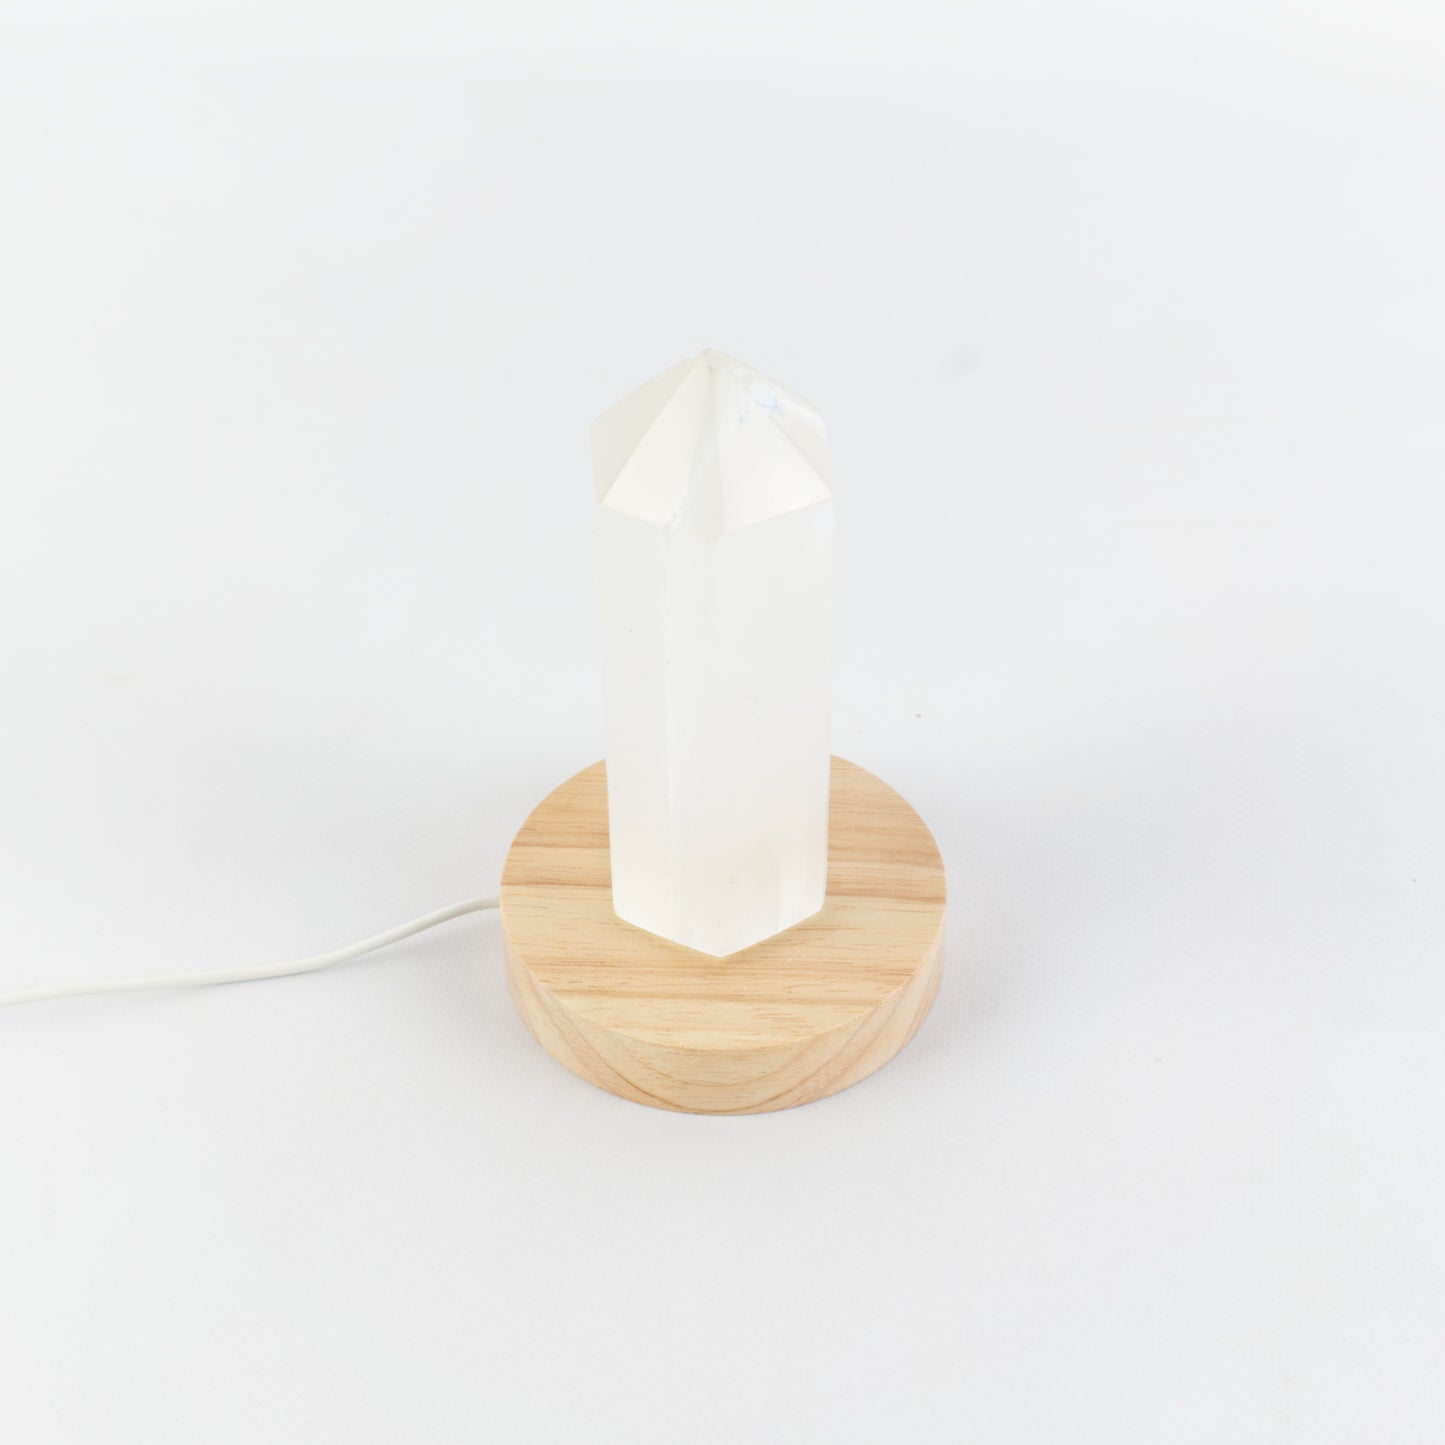 Selenite Crystal LED Lamp